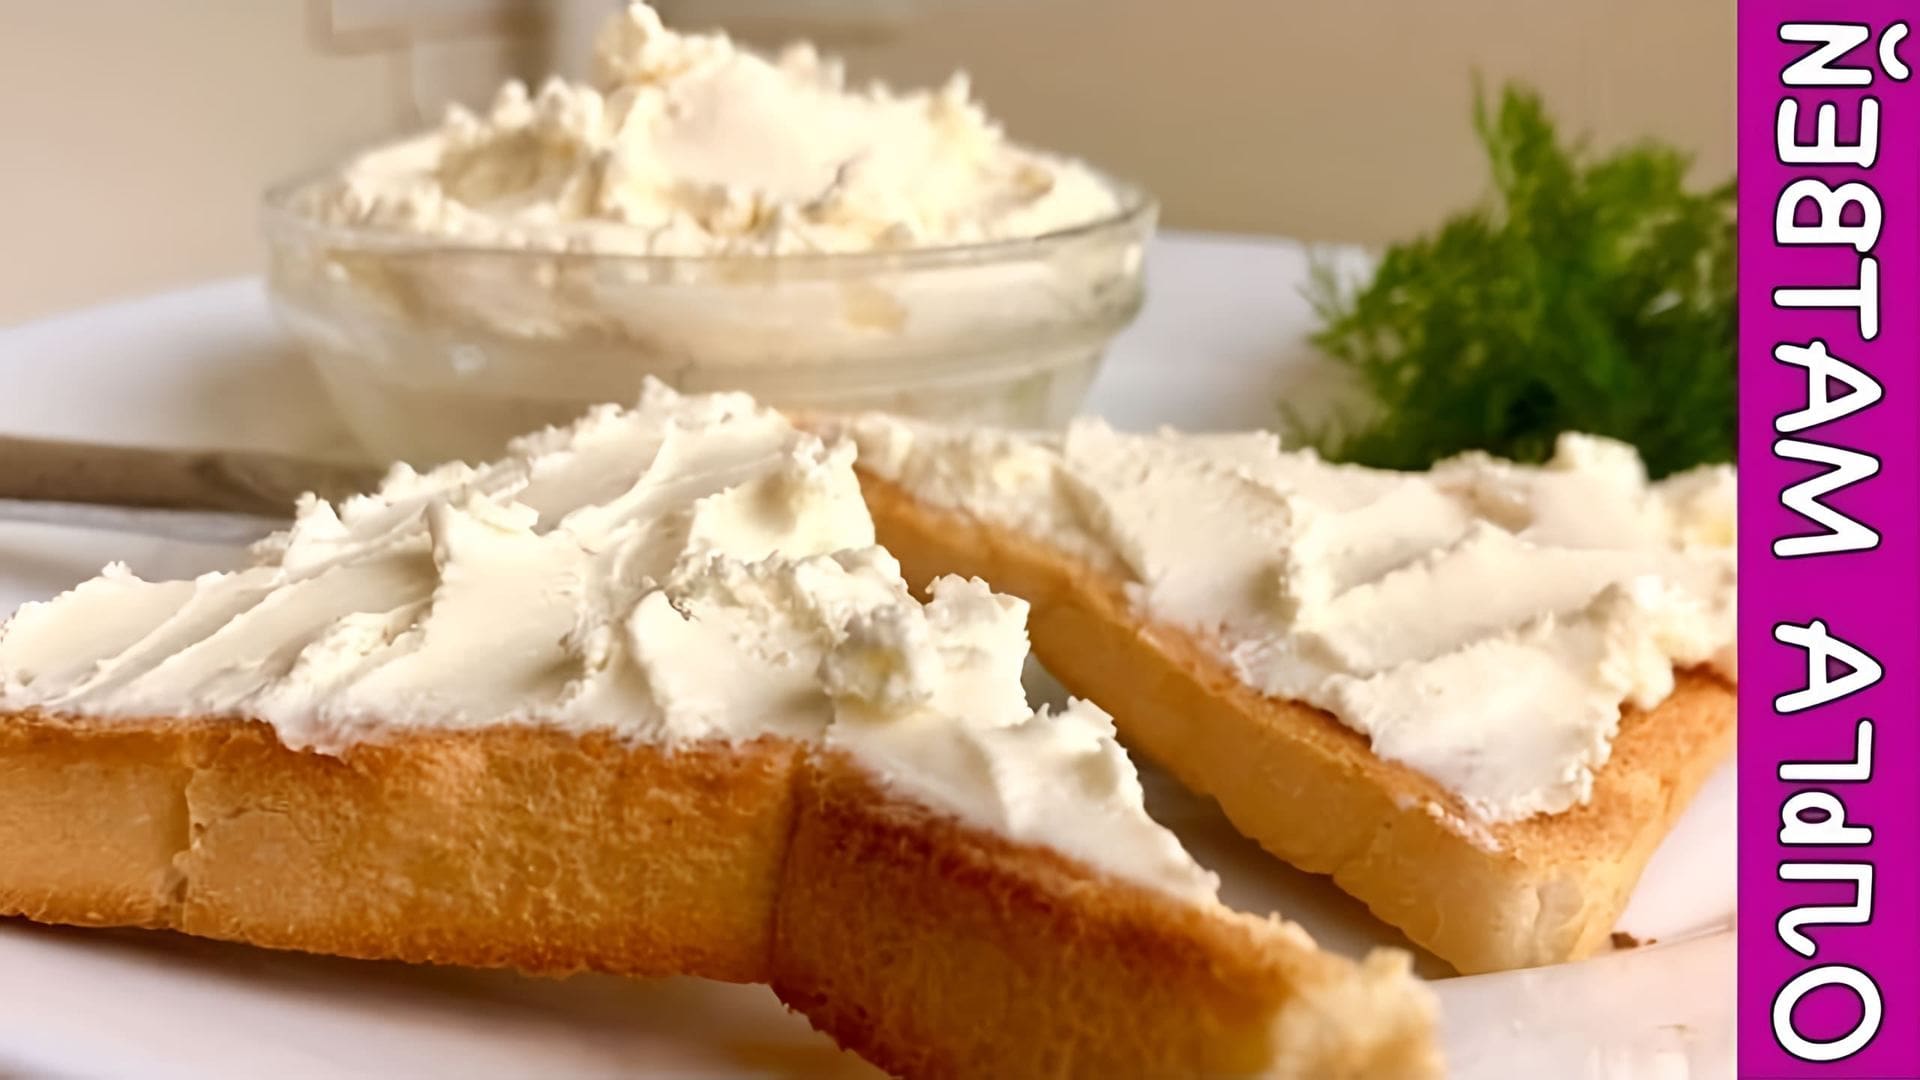 В этом видео демонстрируется процесс приготовления сыра "Филадельфия" в домашних условиях